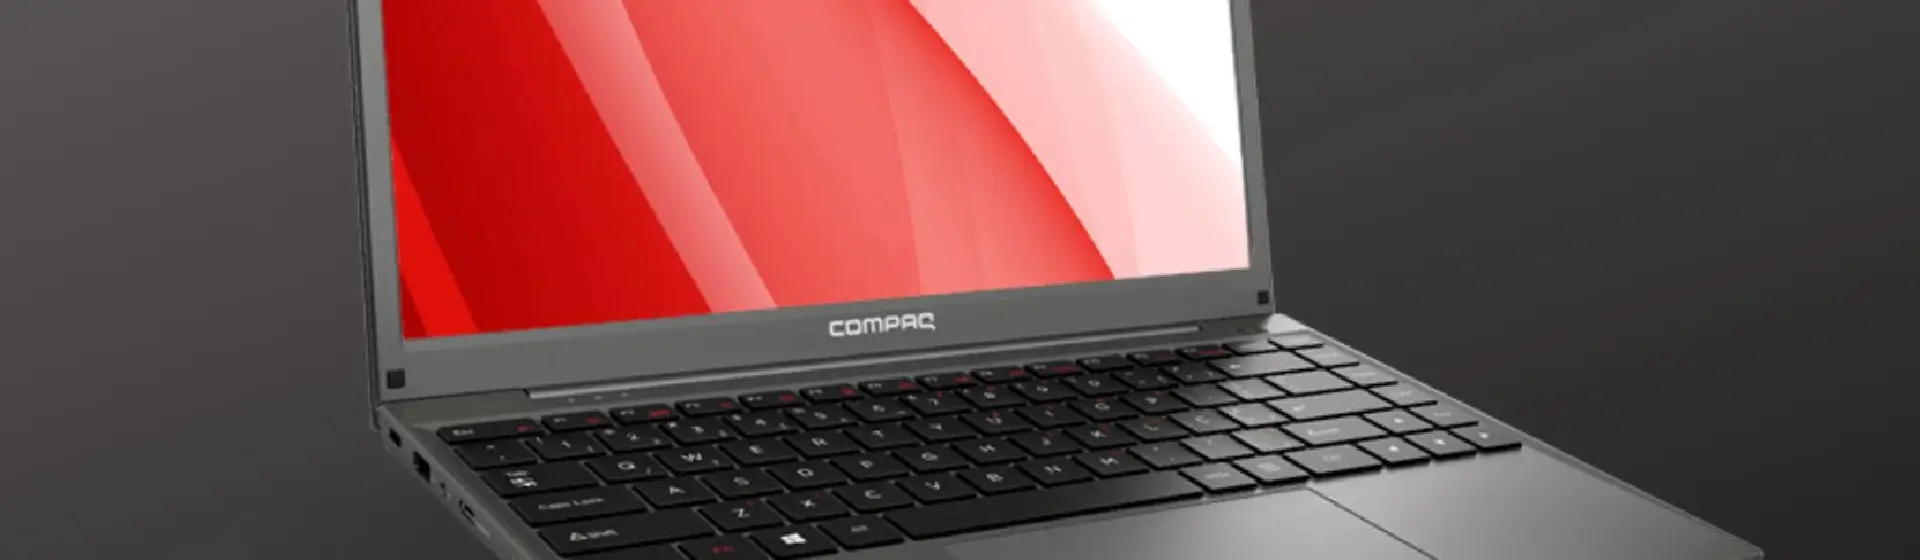 Notebook Compaq: conheça 5 modelos baratos com SSD